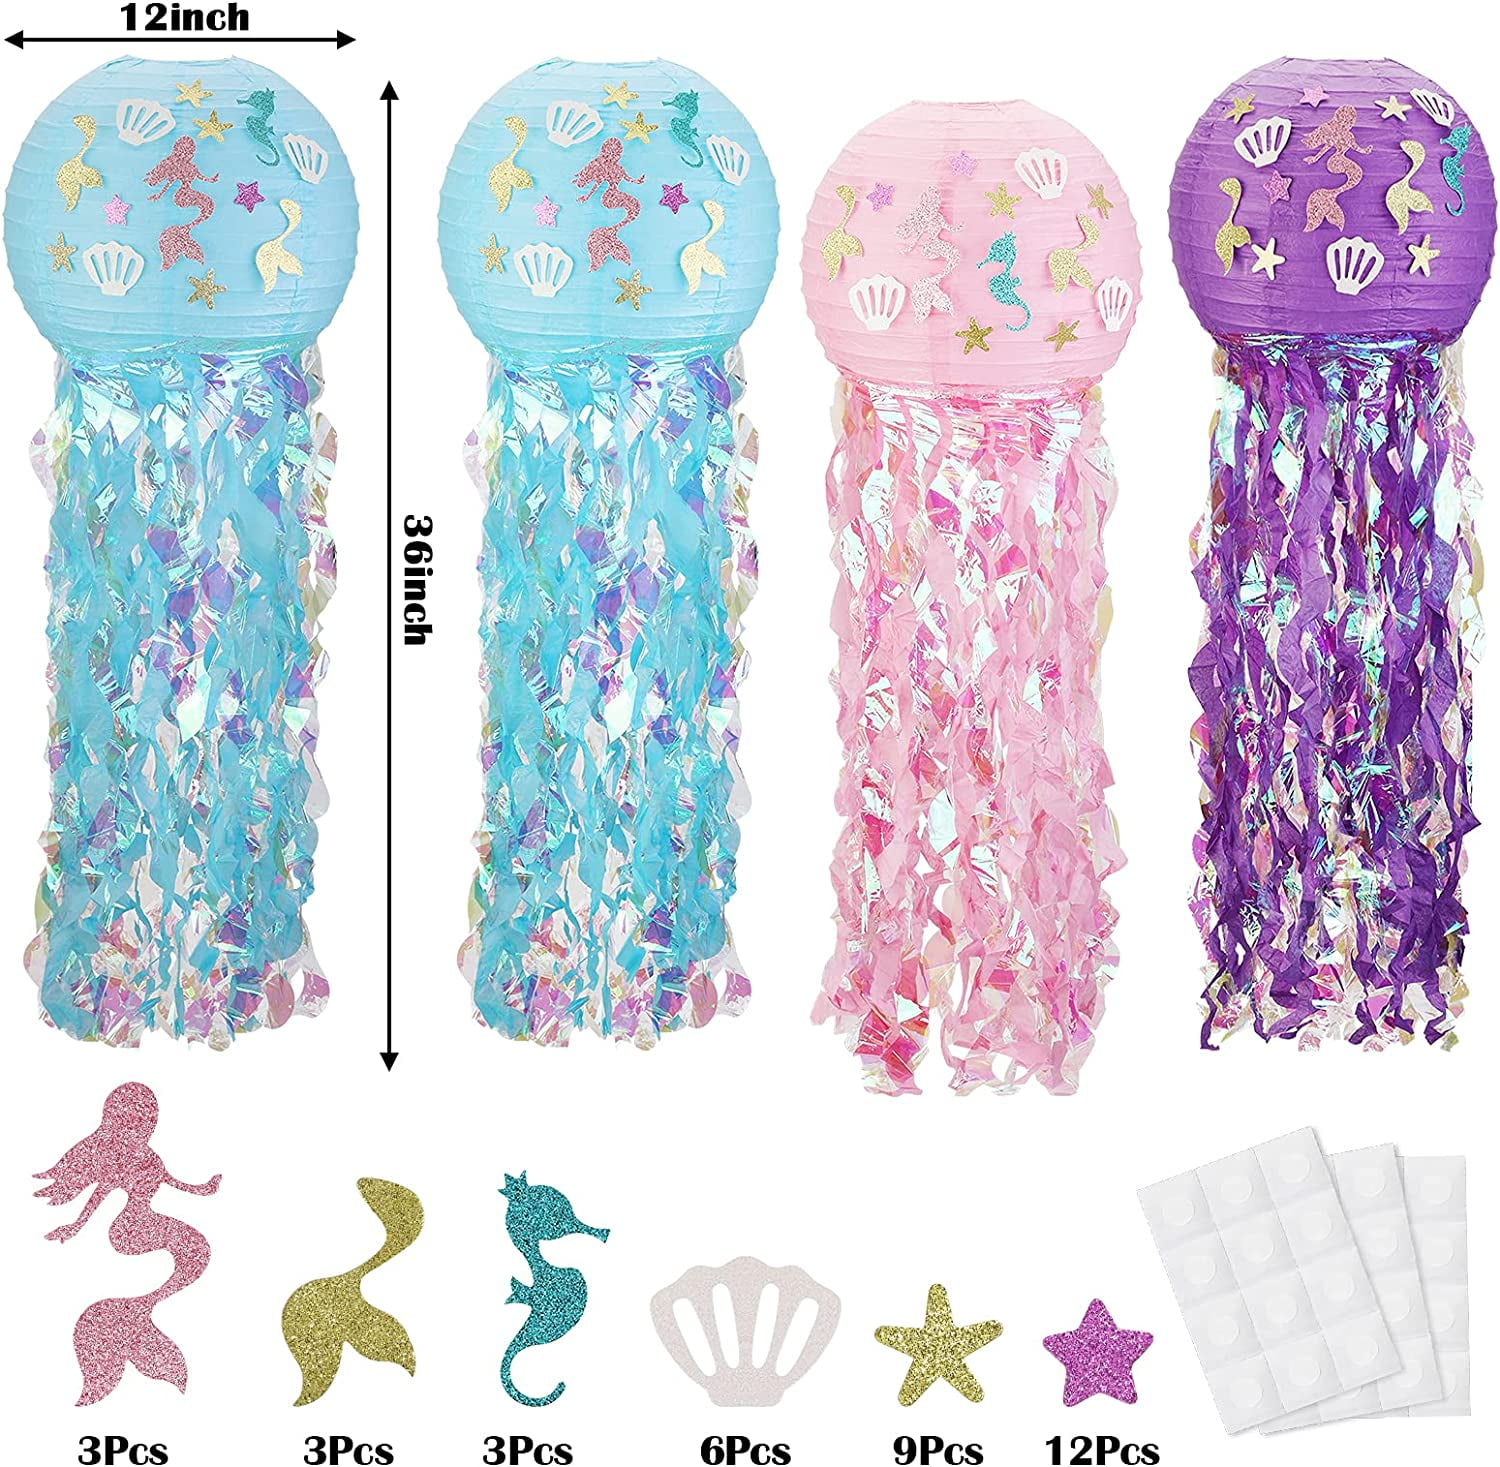 3PCS Mermaid Jellyfish Lanterns Hanging Paper Lanterns for Child